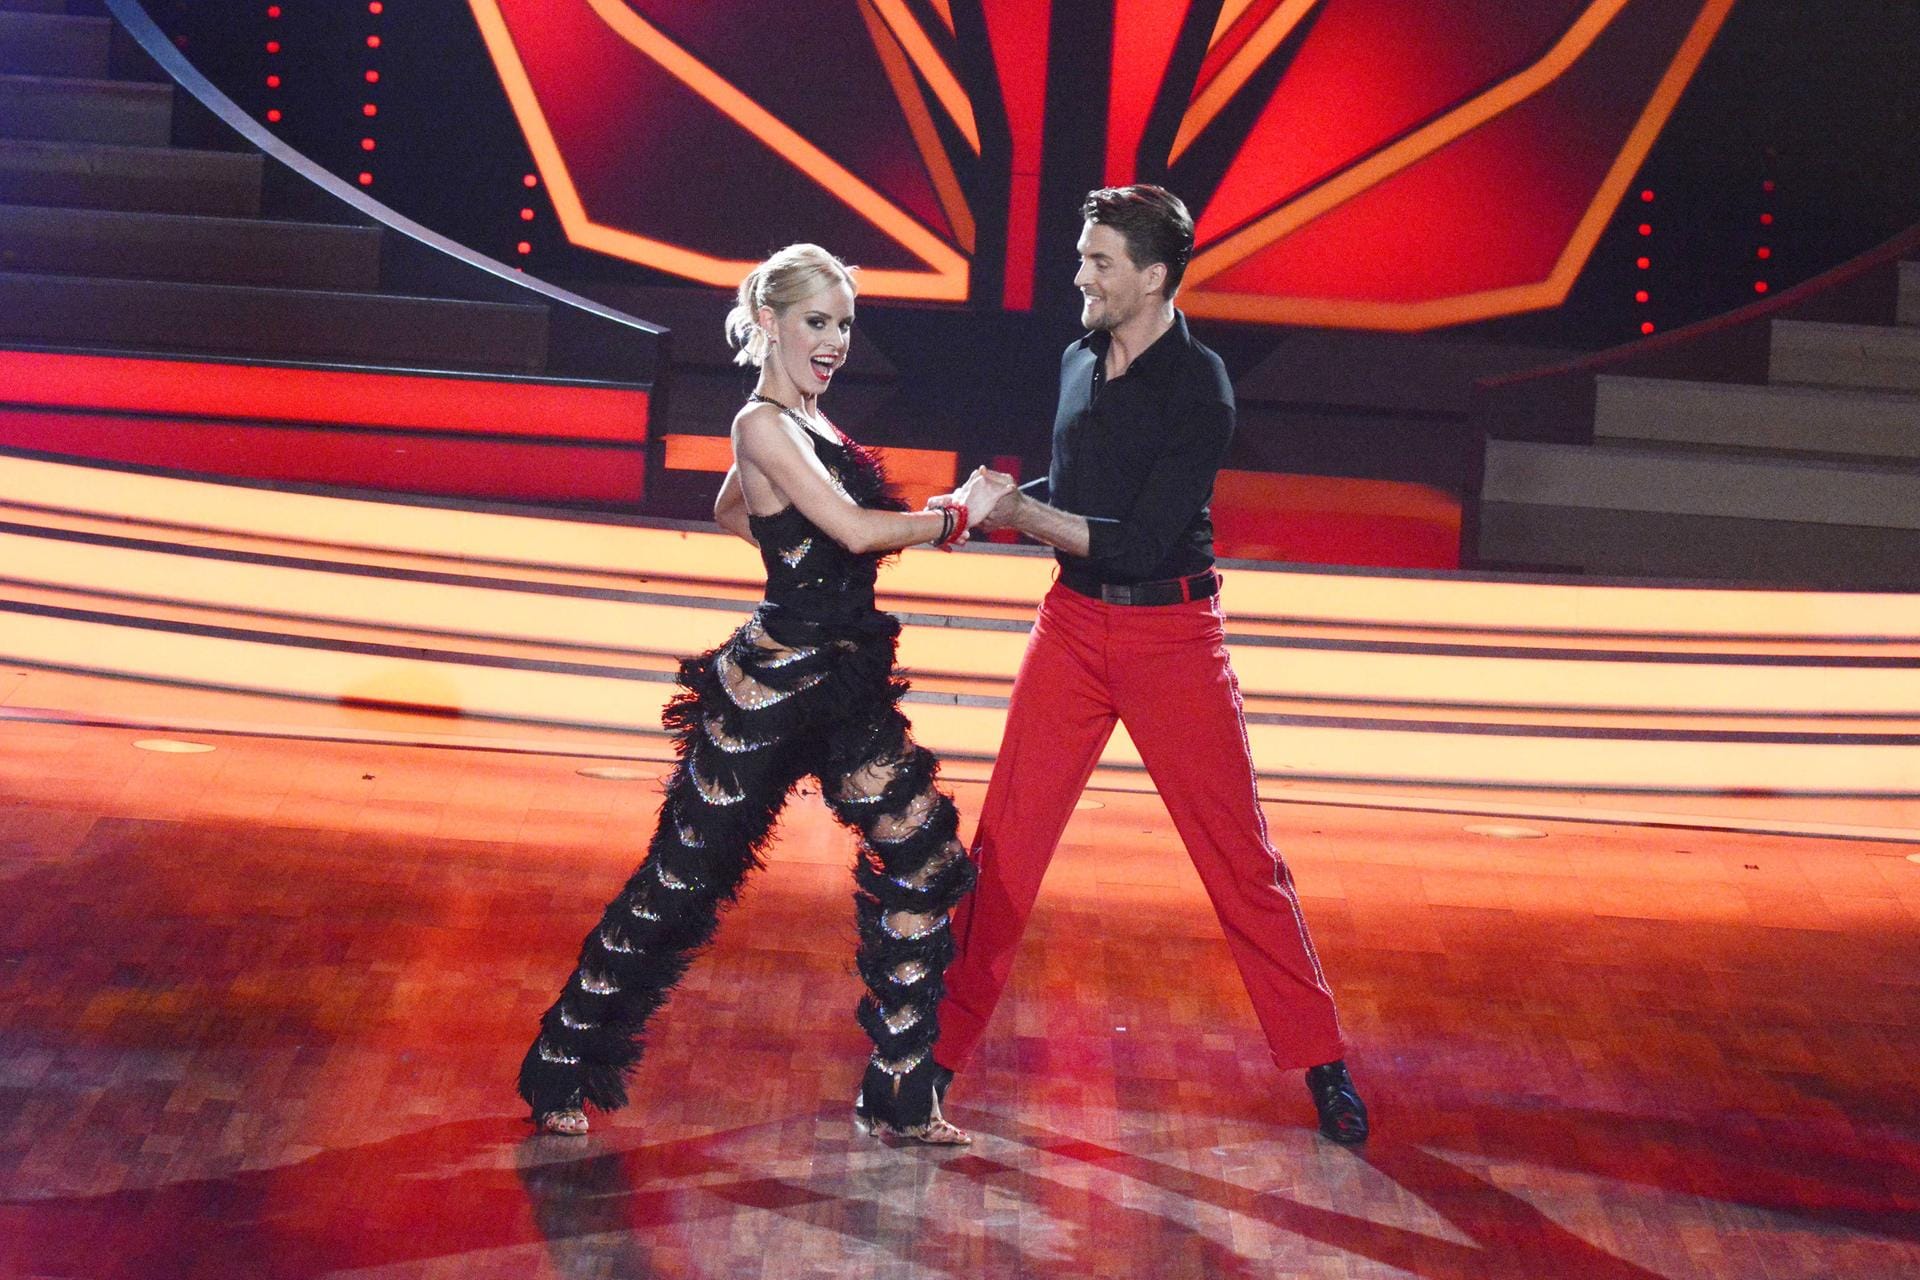 Mit Tänzerin Isabel Edvardsson gewinnt er die 7. Staffel der RTL-Show "Let's dance".